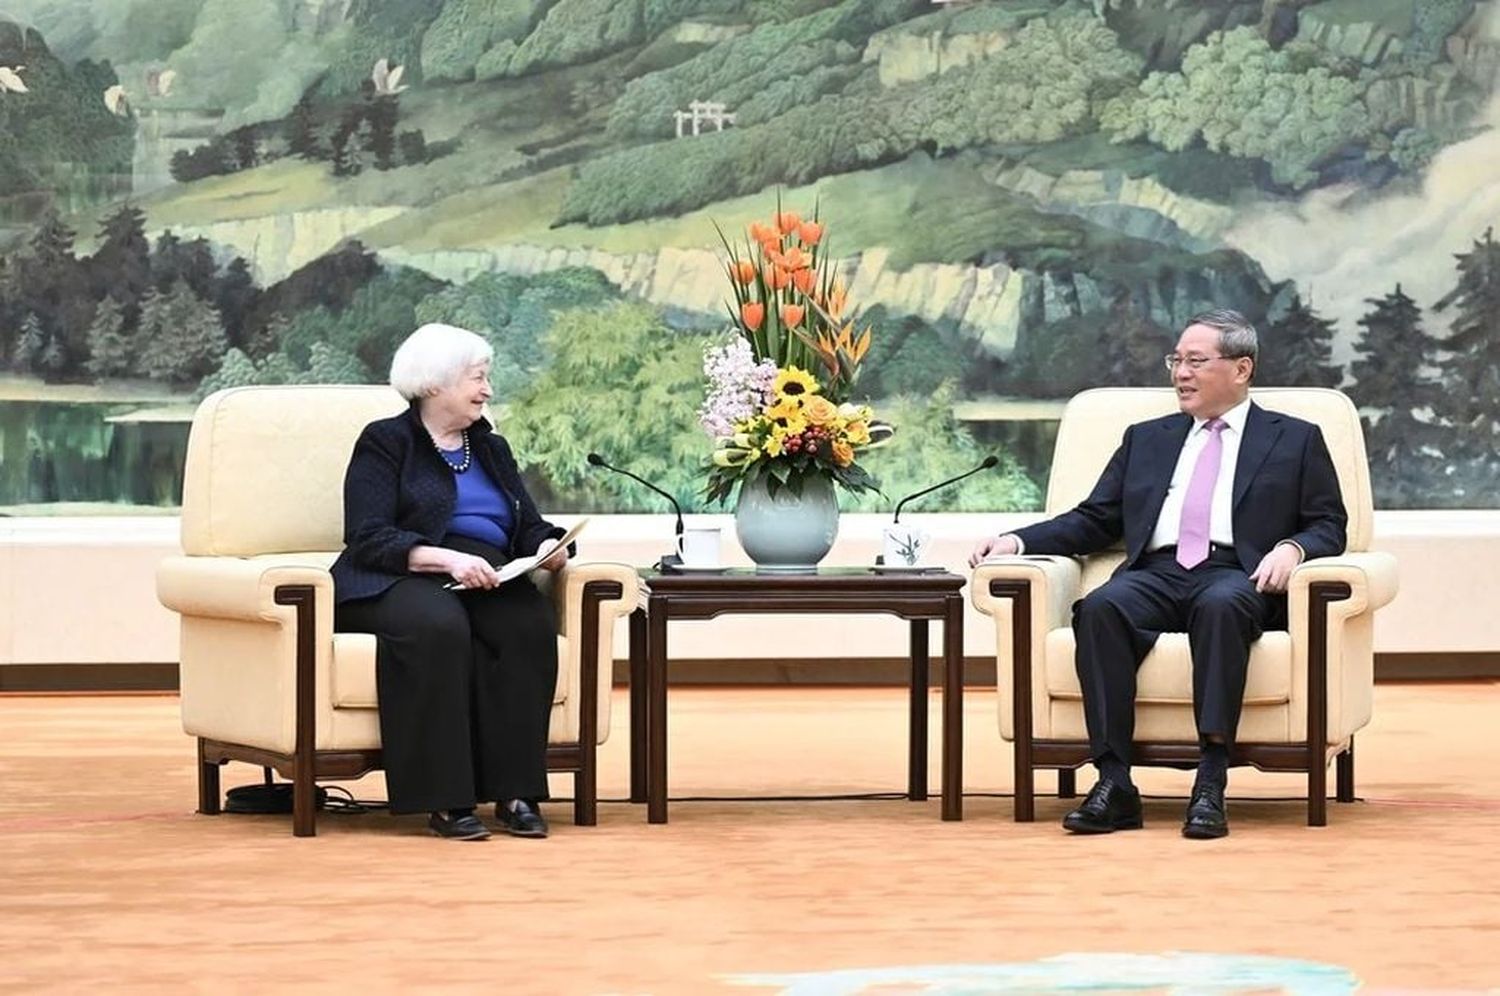 Al comienzo de una reunión en Pekín que duró 80 minutos, Li respondió que los dos países debían respetarse mutuamente y ser socios, no adversarios, y añadió que durante el viaje de Yellen se habían realizado "progresos constructivos".